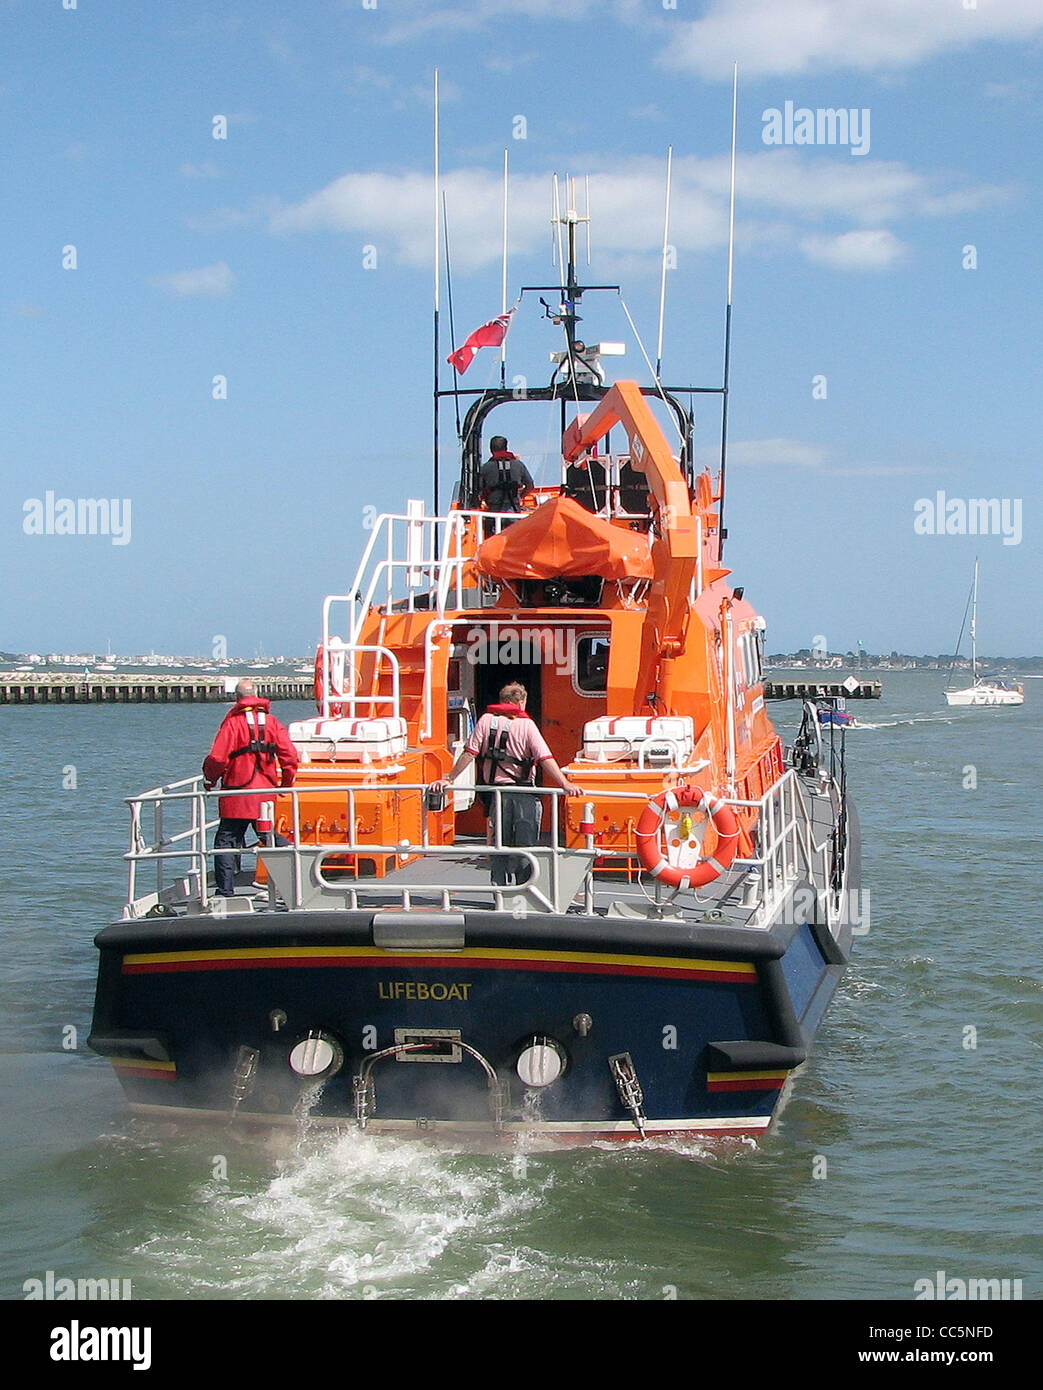 La poppa del Regno Unito scialuppa di salvataggio 17-31 (Severn classe) nel porto di Poole, Dorset, Inghilterra. Foto Stock